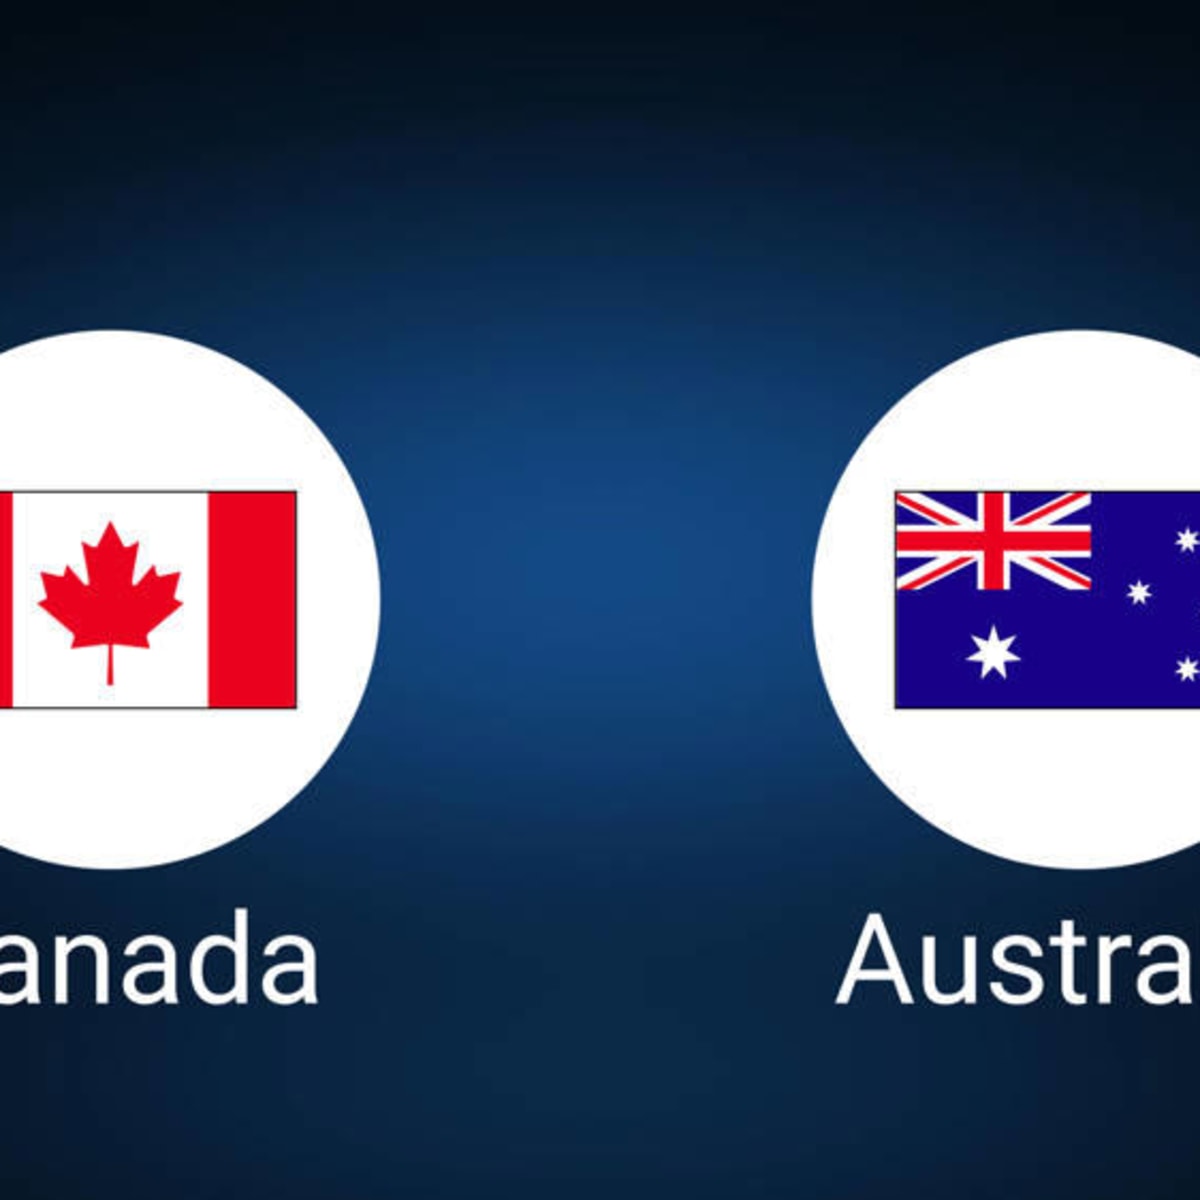 How to Watch Australia vs